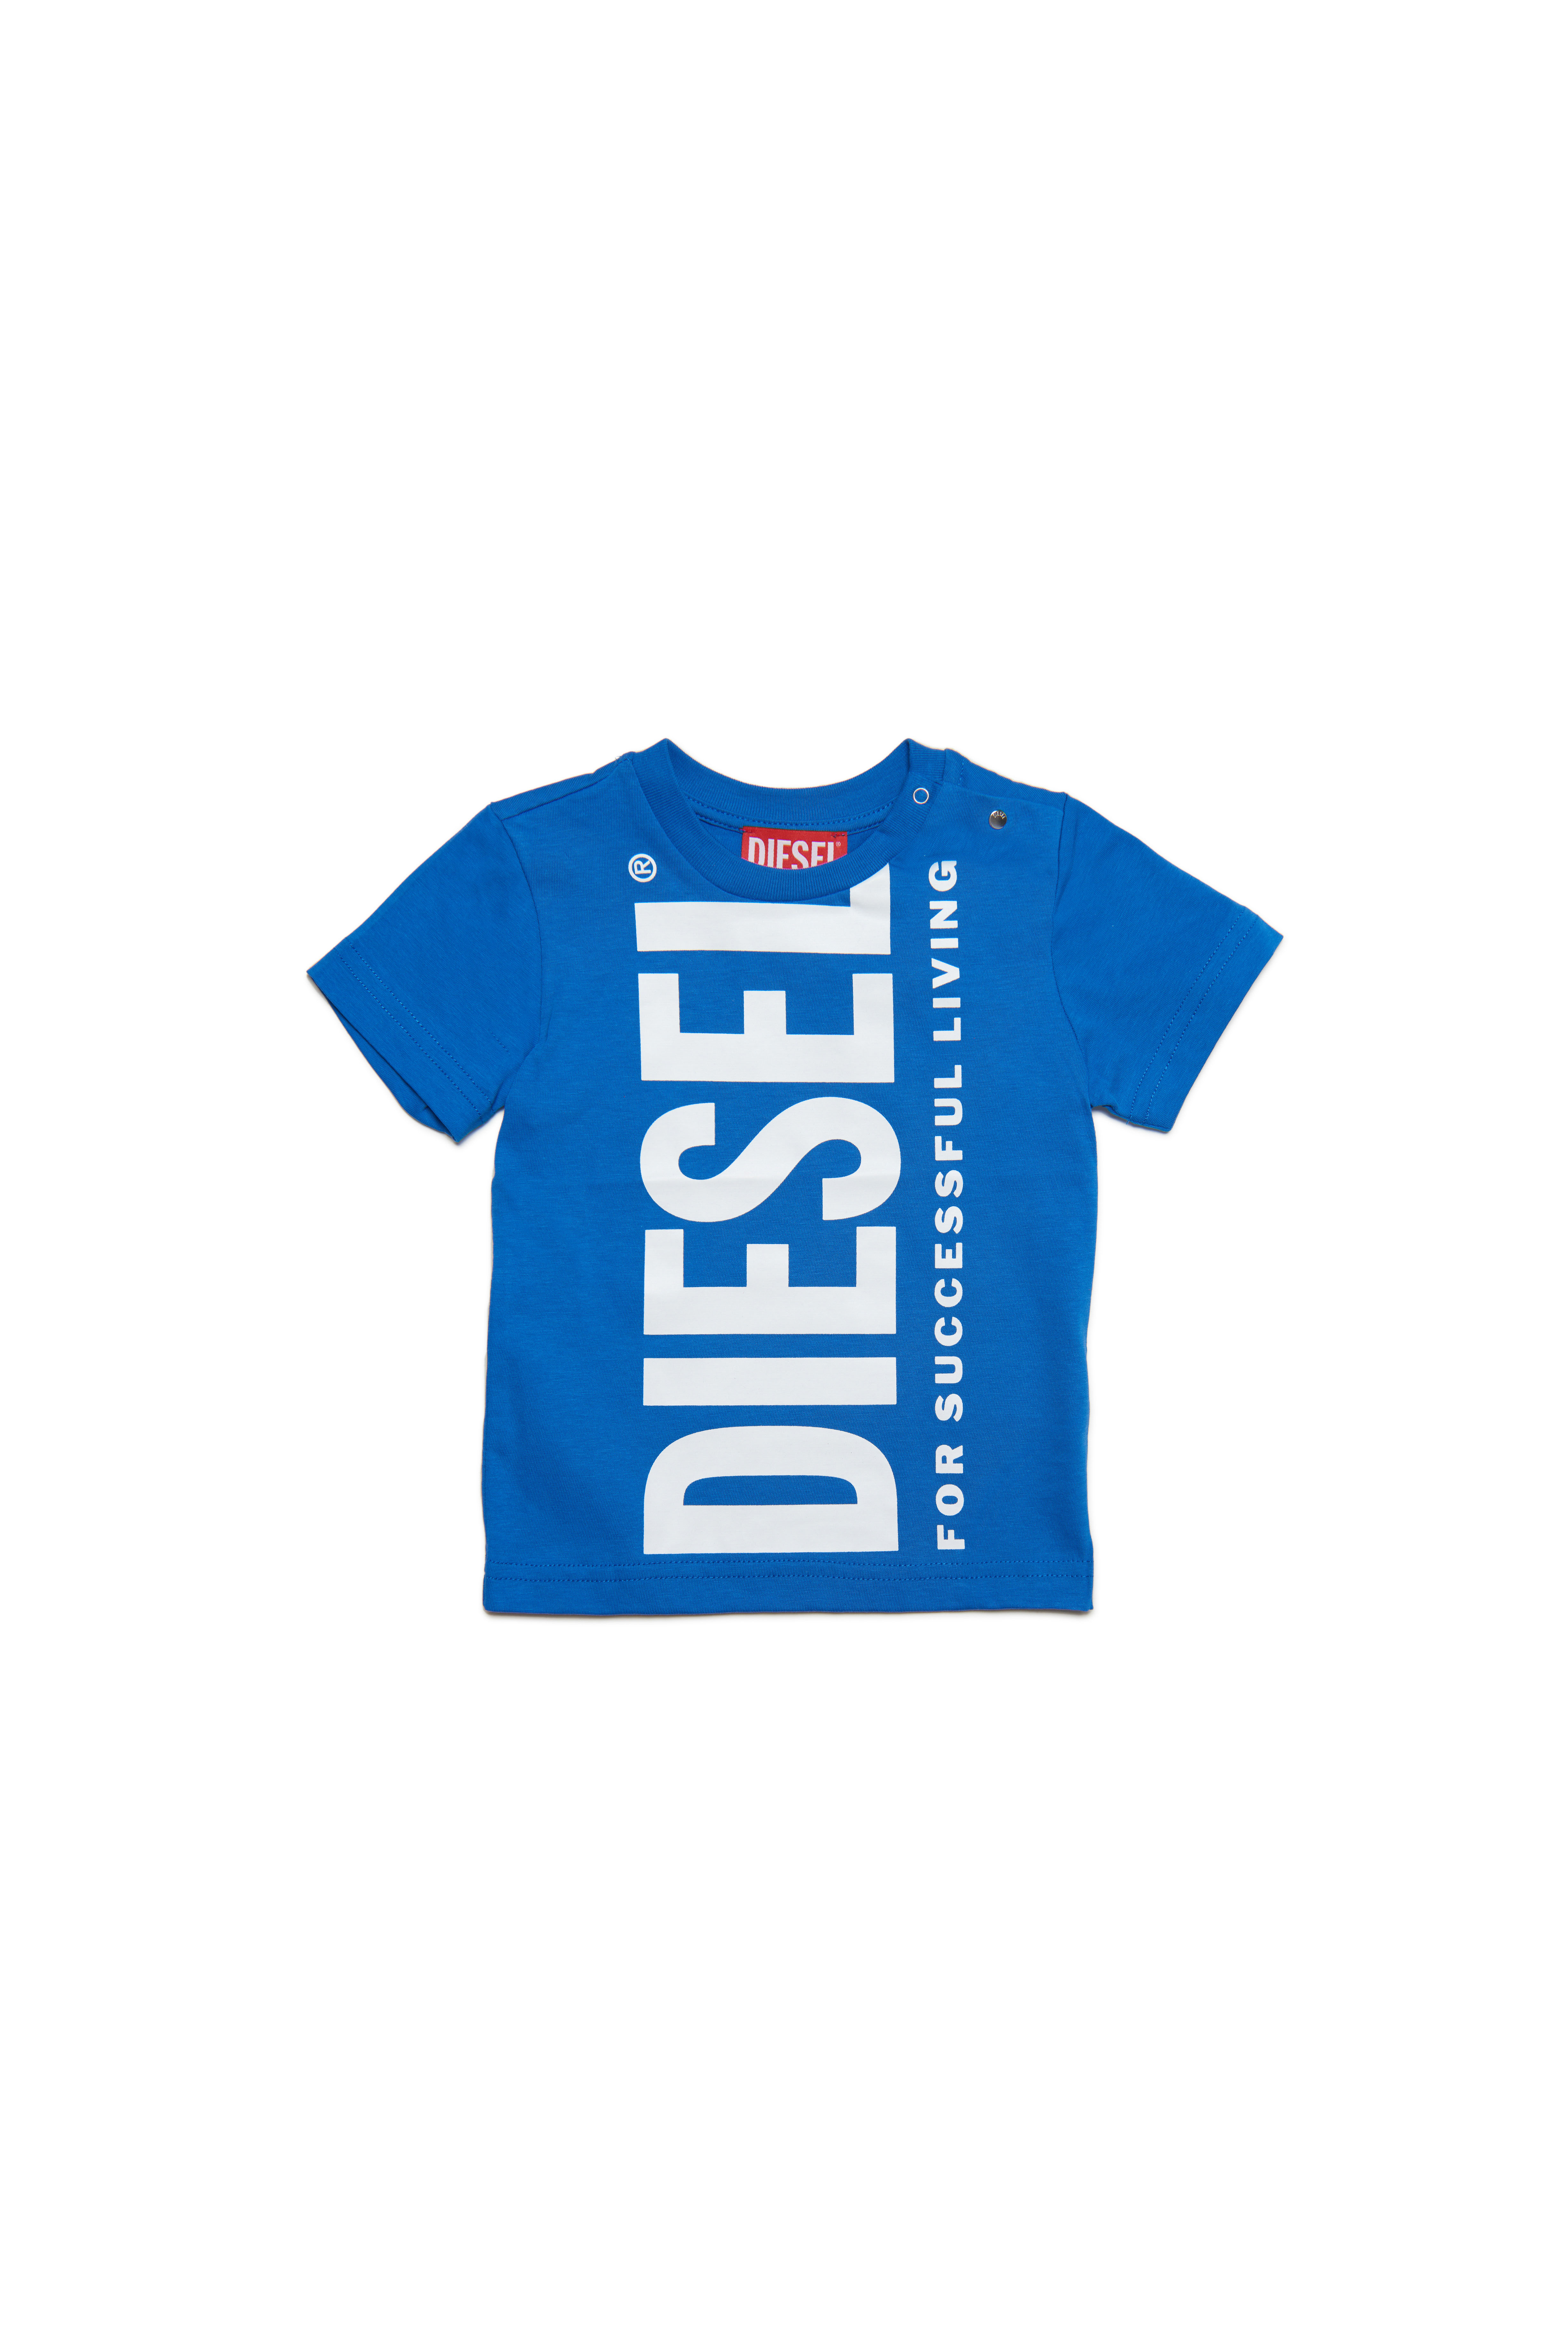 Diesel - TANTYB, Blue - Image 1